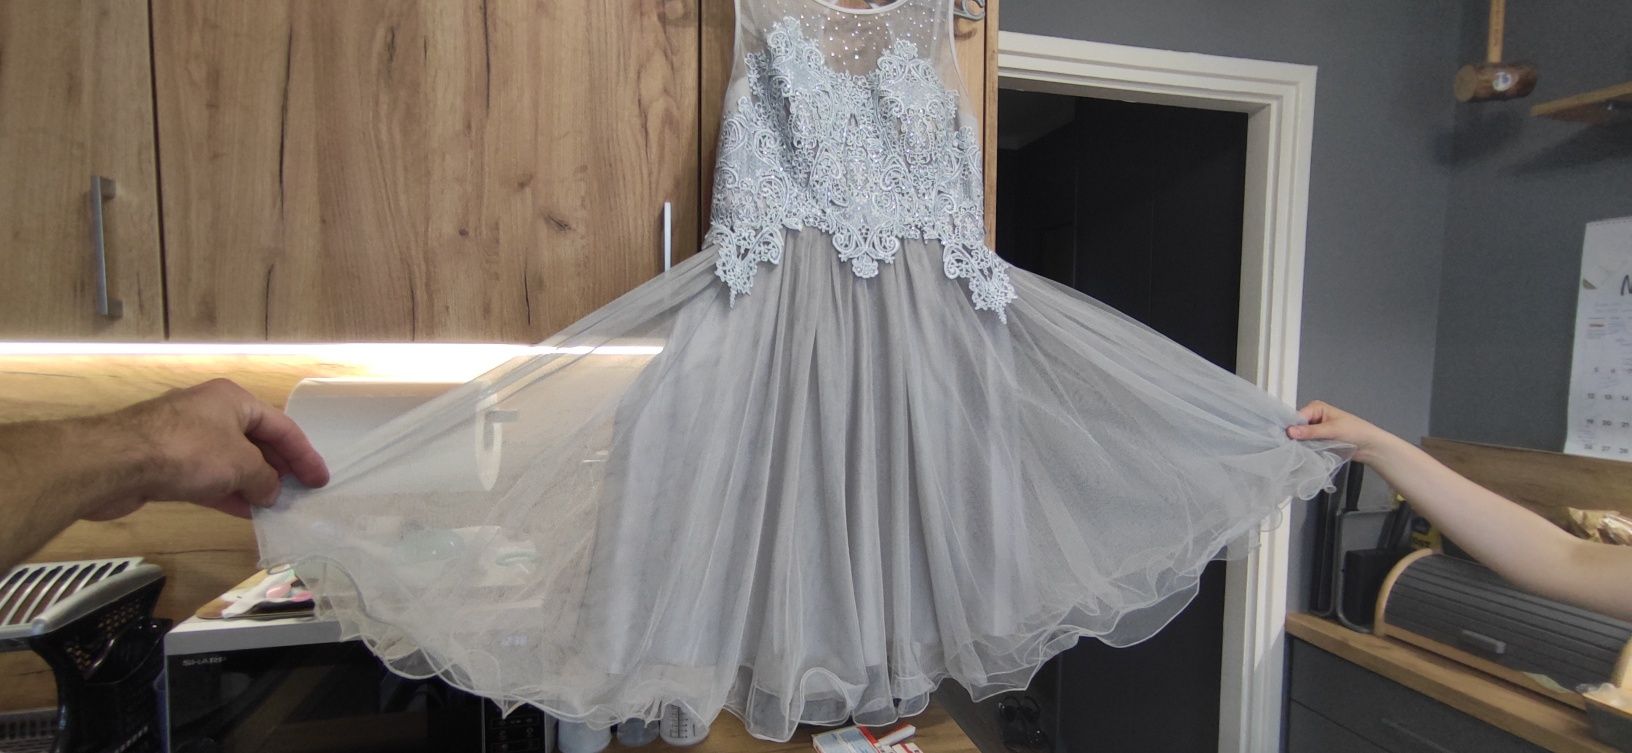 Sukienka okolicznościowa rozmiar M koronkowo-tiulowa jasno szara